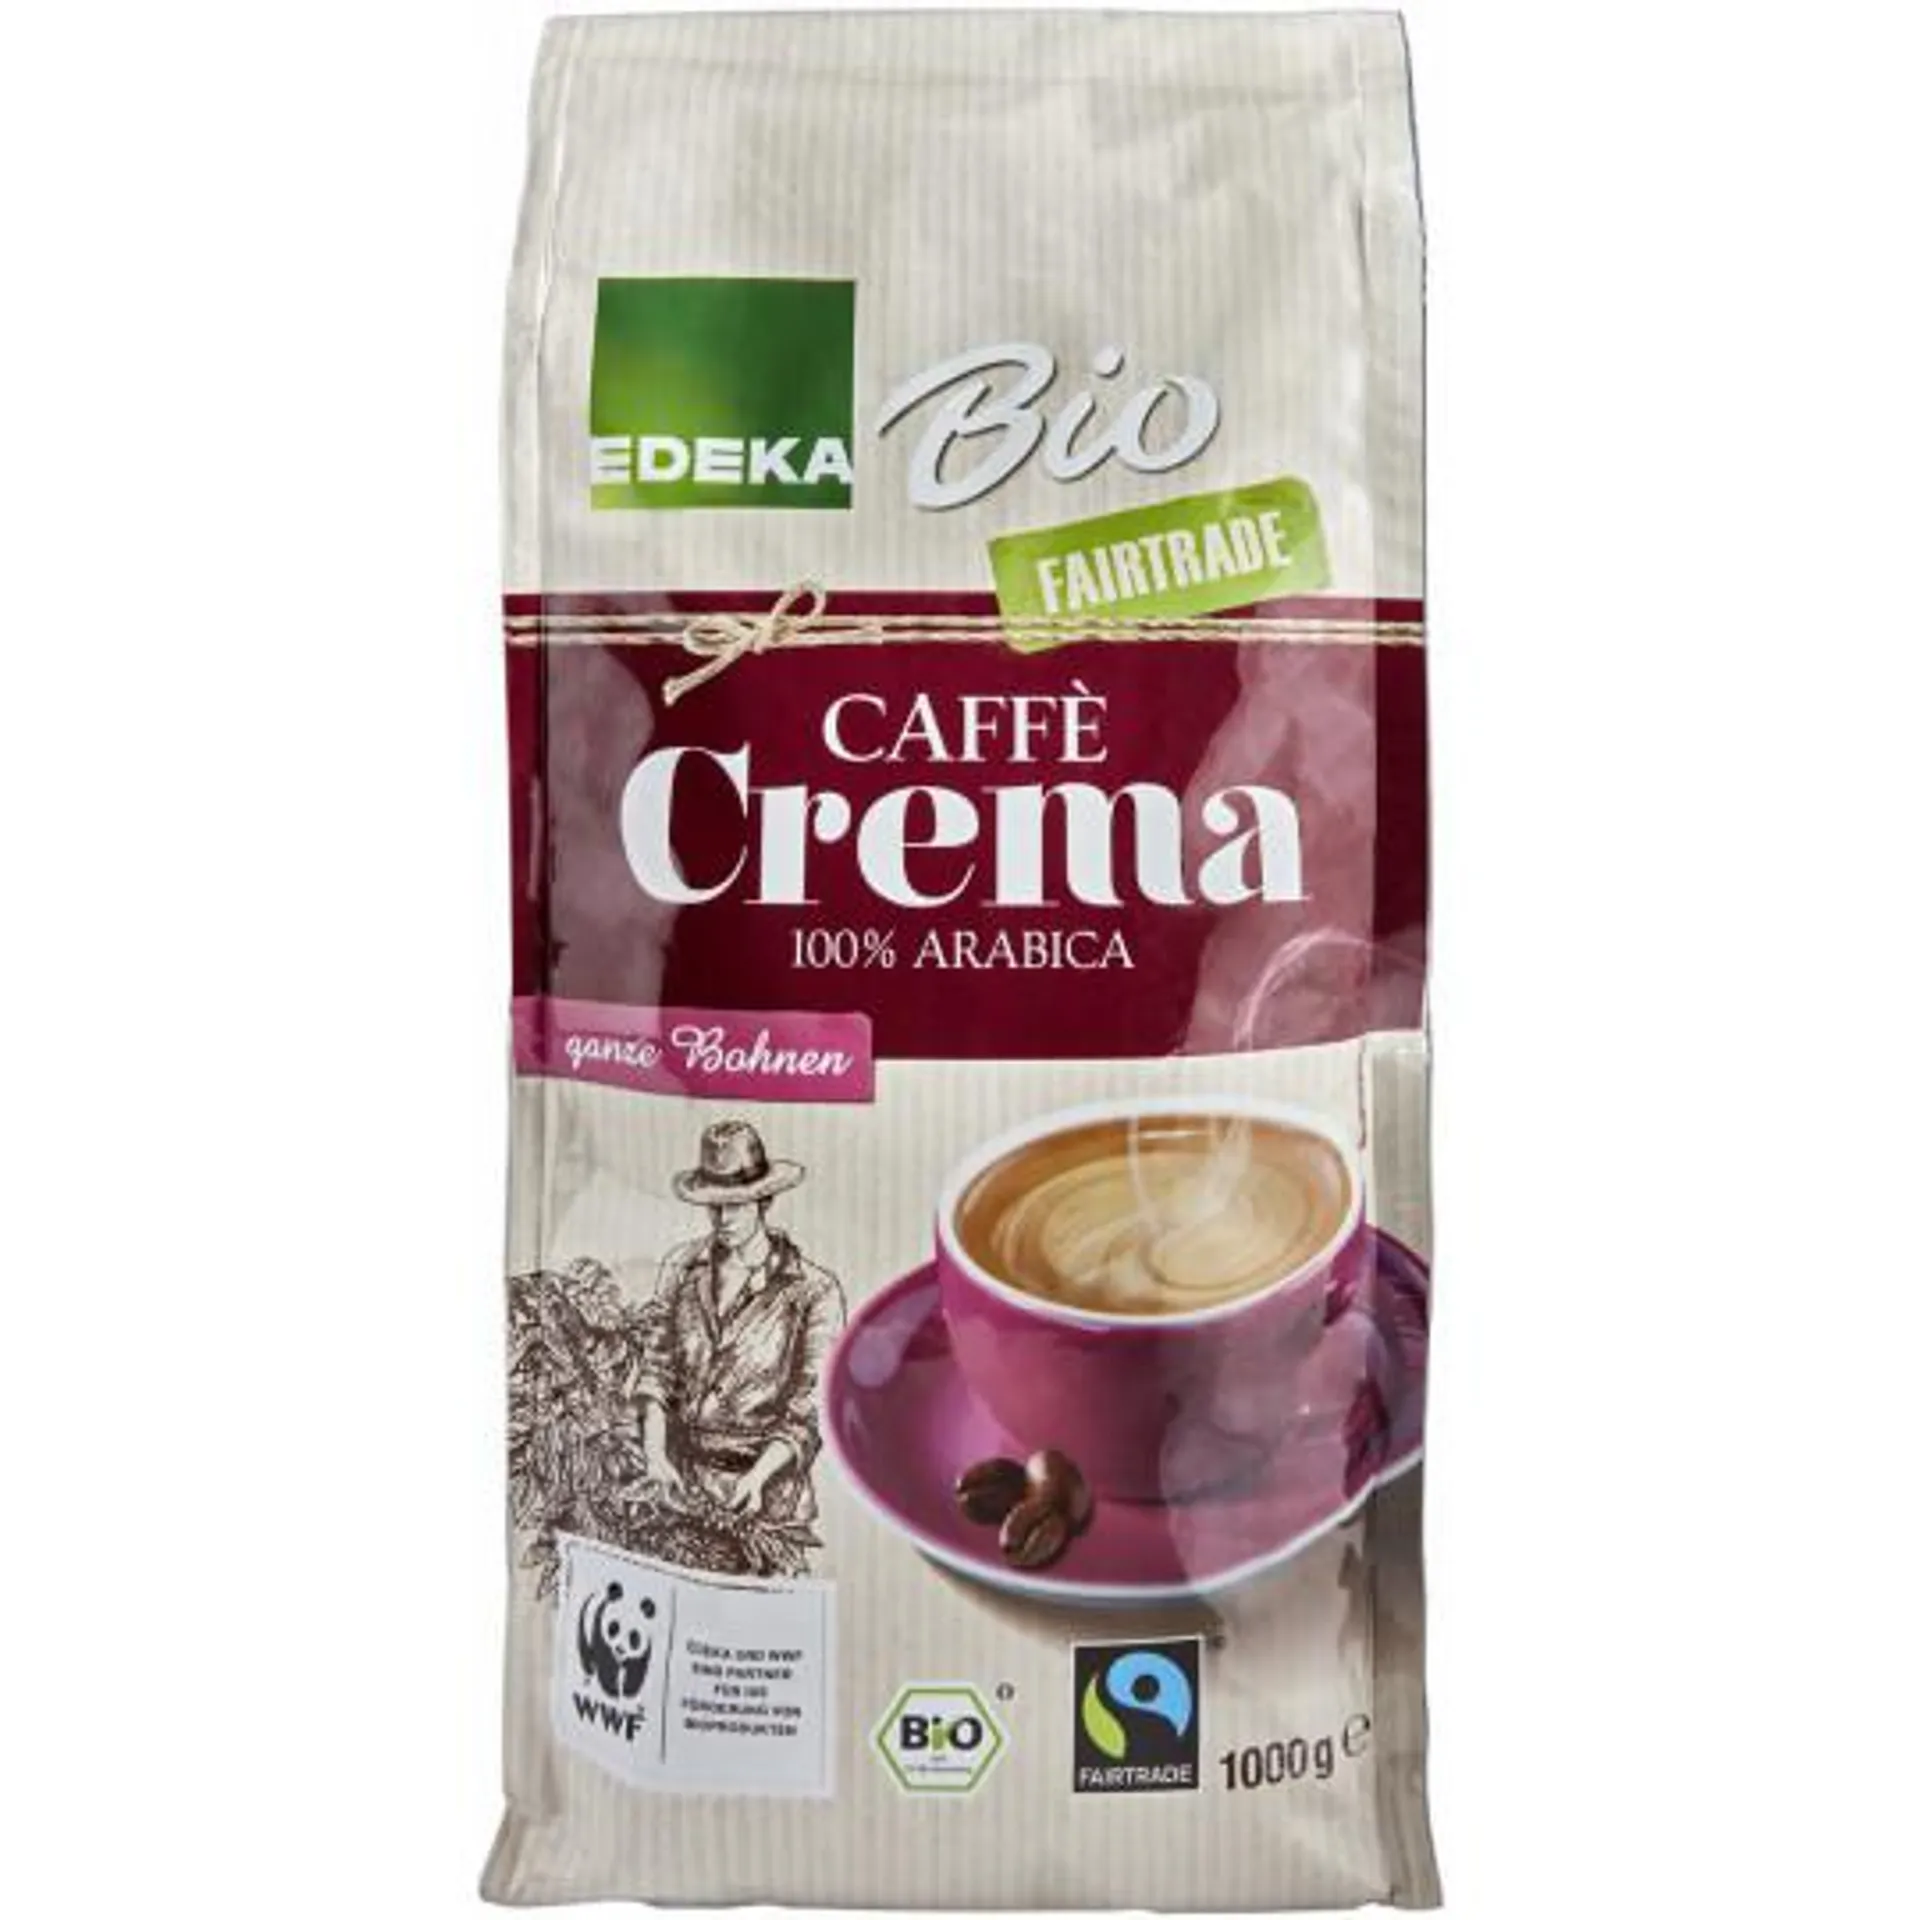 EDEKA Bio Caffè Crema ganze Bohnen 1KG